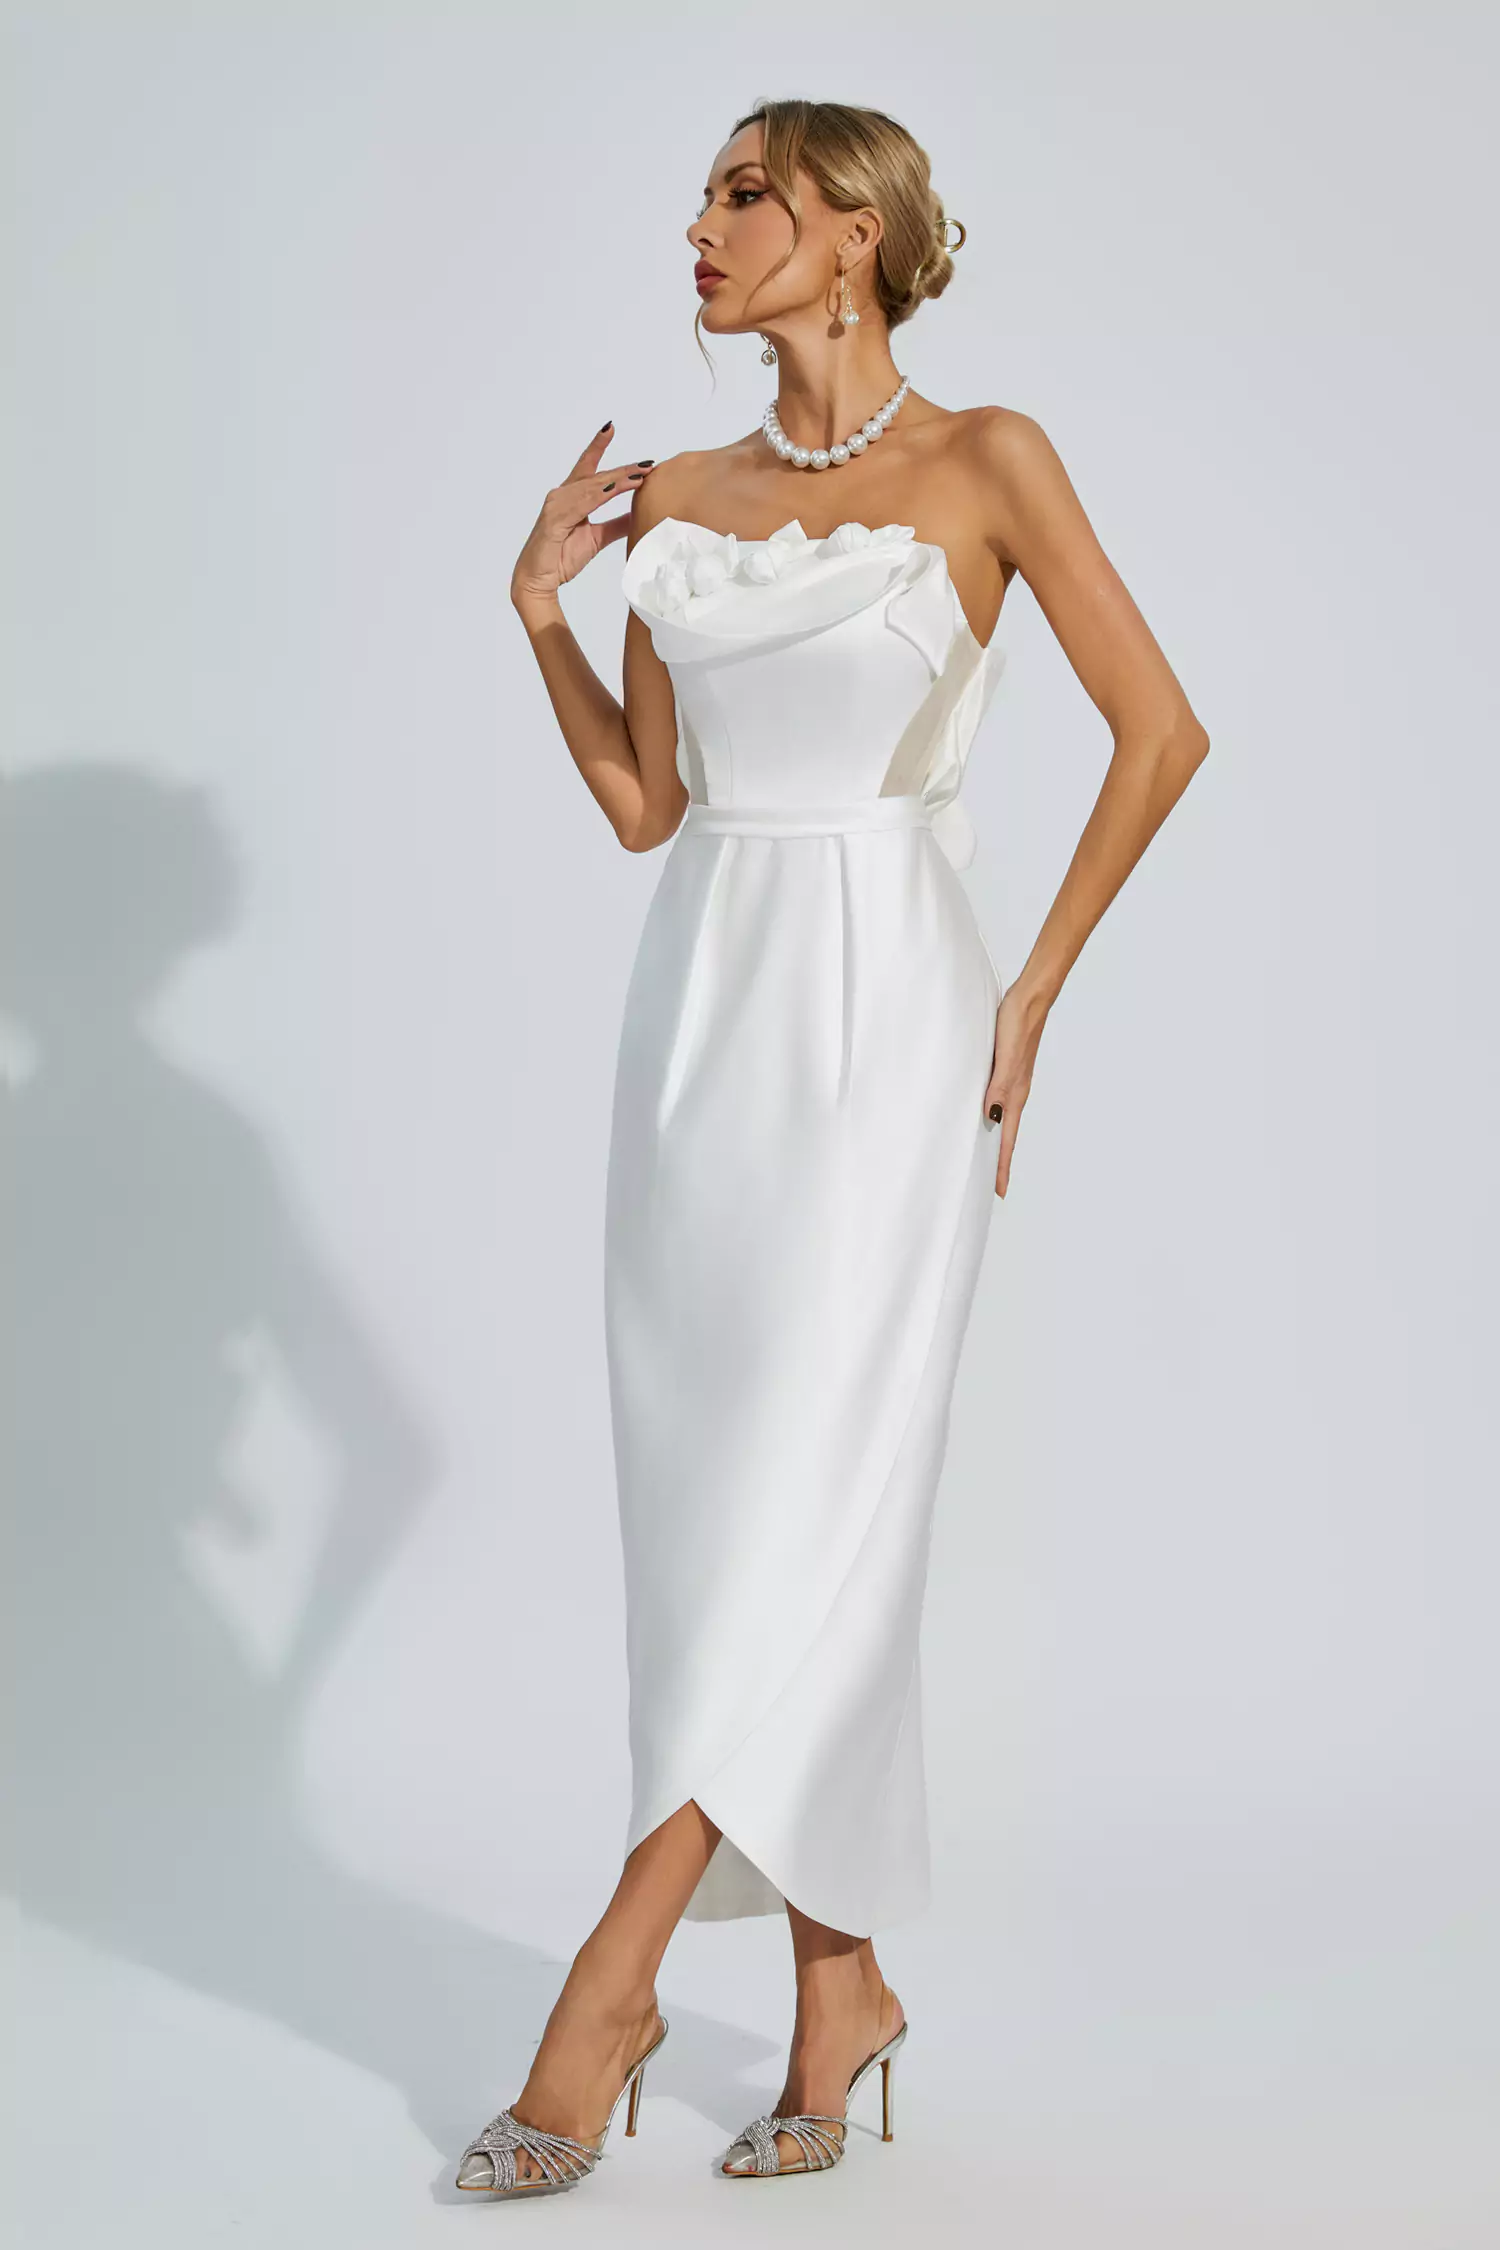 Marceline White Off Shoulder Satin Dress